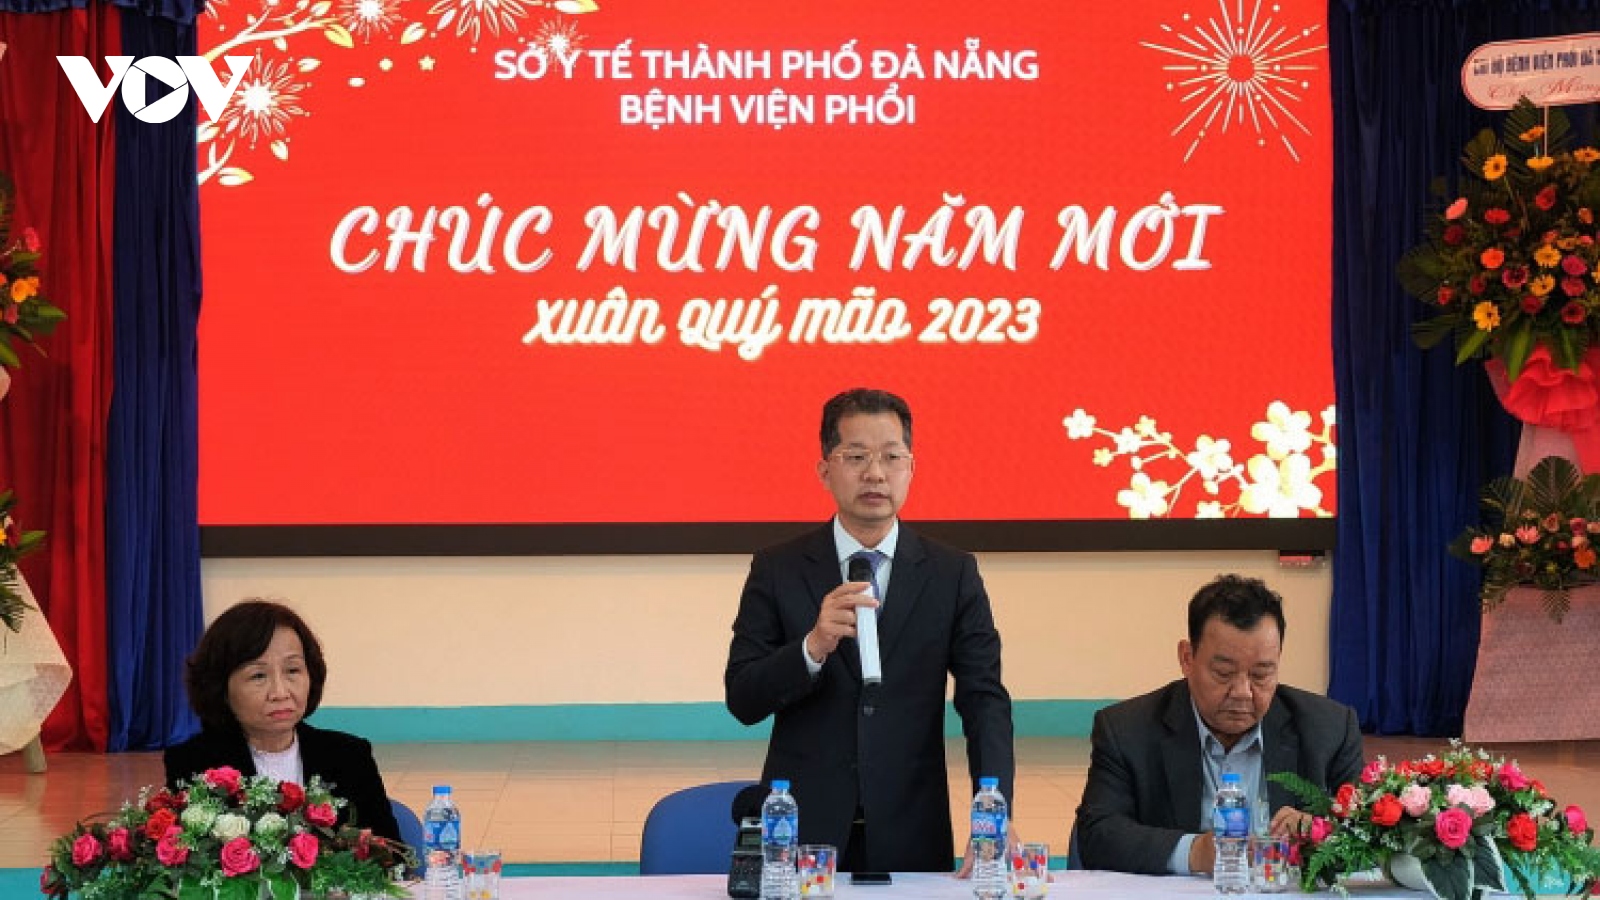 Xây dựng thành phố Đà Nẵng thành trung tâm y tế chất lượng cao